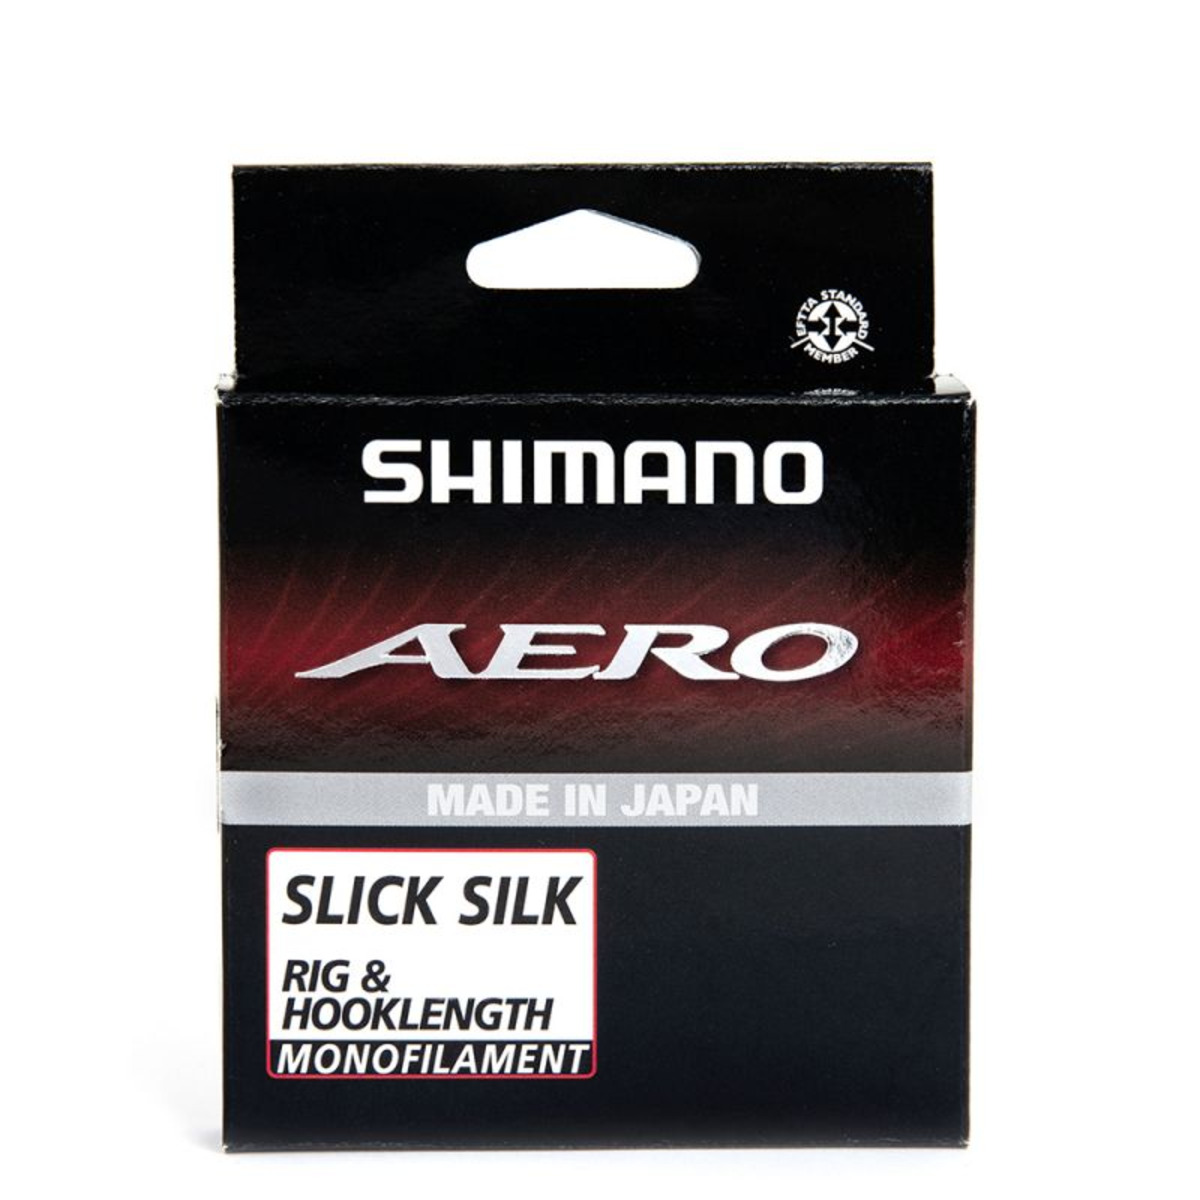 Shimano Aero Slick Silk Rig and Hooklength - 0.123 mm - 100 m